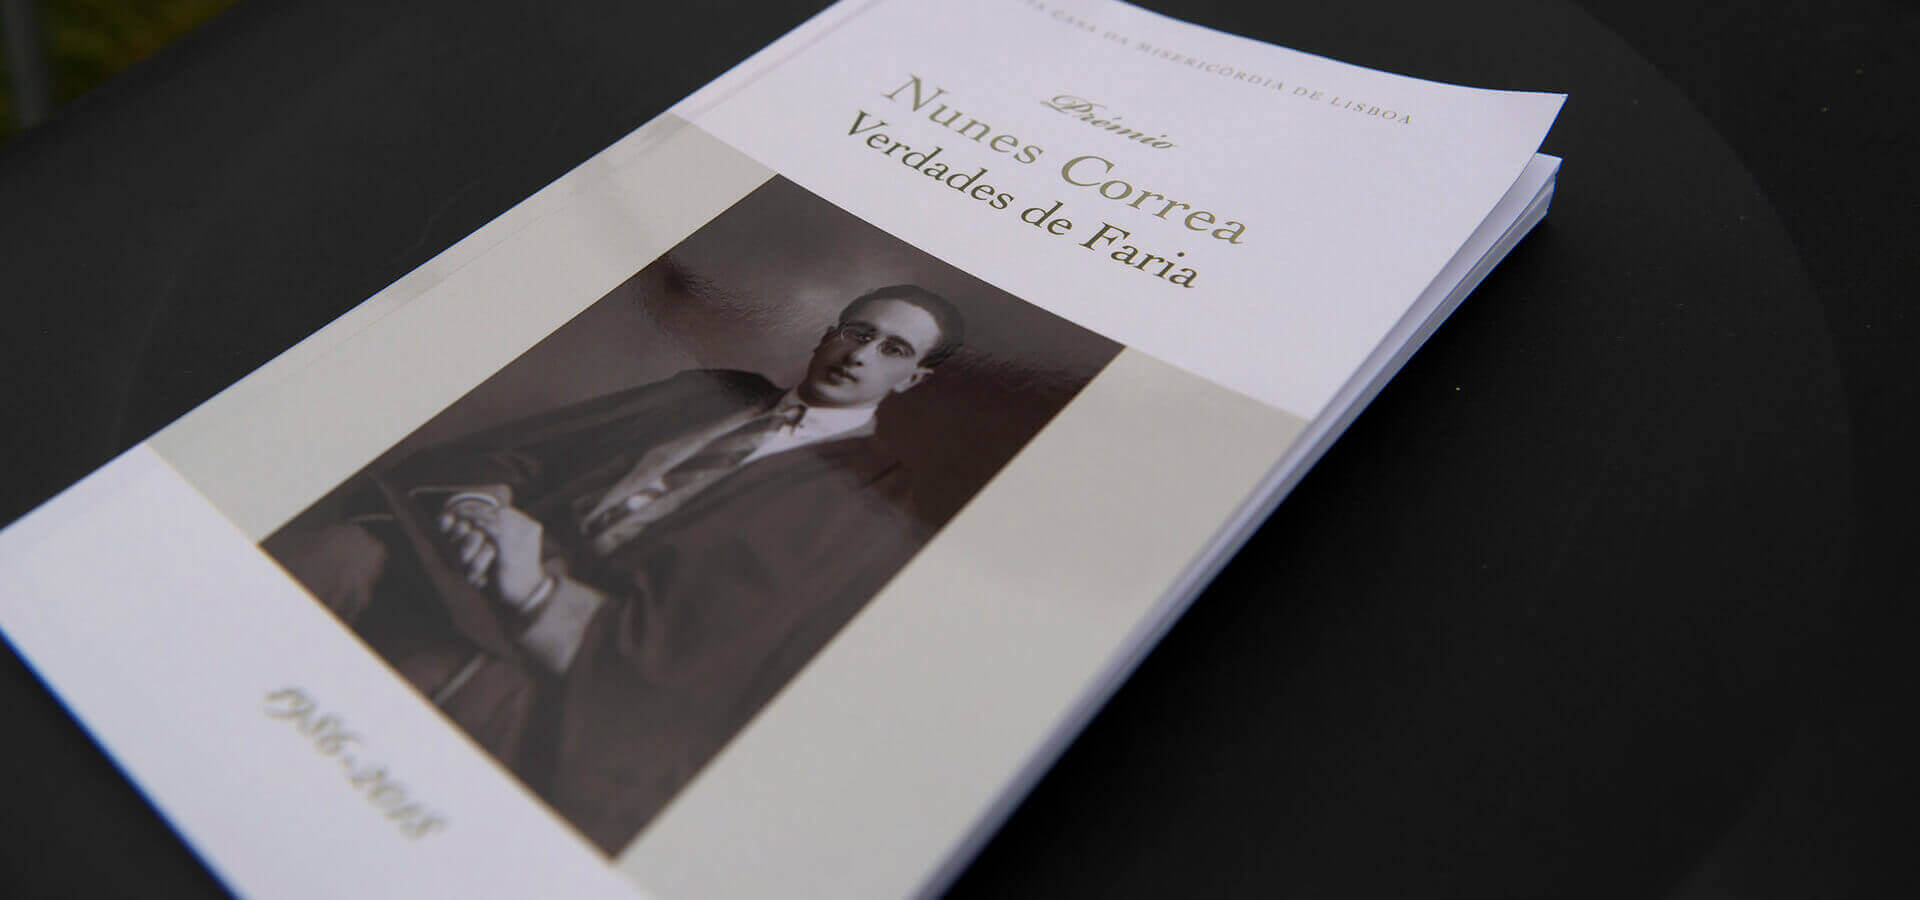 Livro sobre o prémio Nunes Correa Verdades de Faria